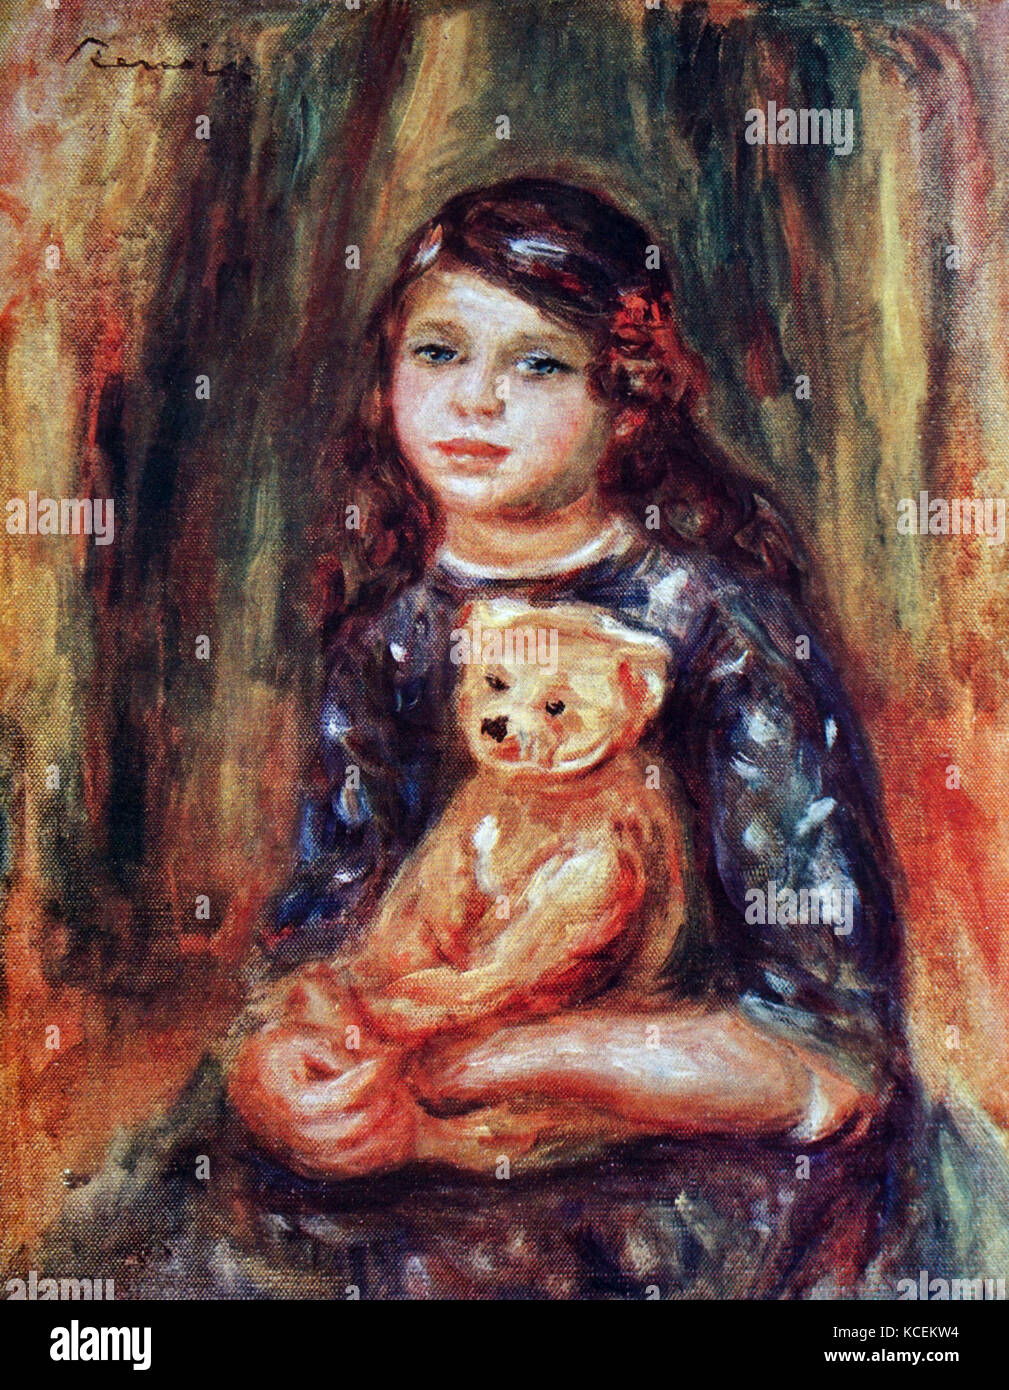 Malerei unter dem Titel "Kind mit Teddy" von Pierre-Auguste Renoir (1841-1919), ein französischer Künstler der impressionistischen Stil. Vom 20. Jahrhundert Stockfoto